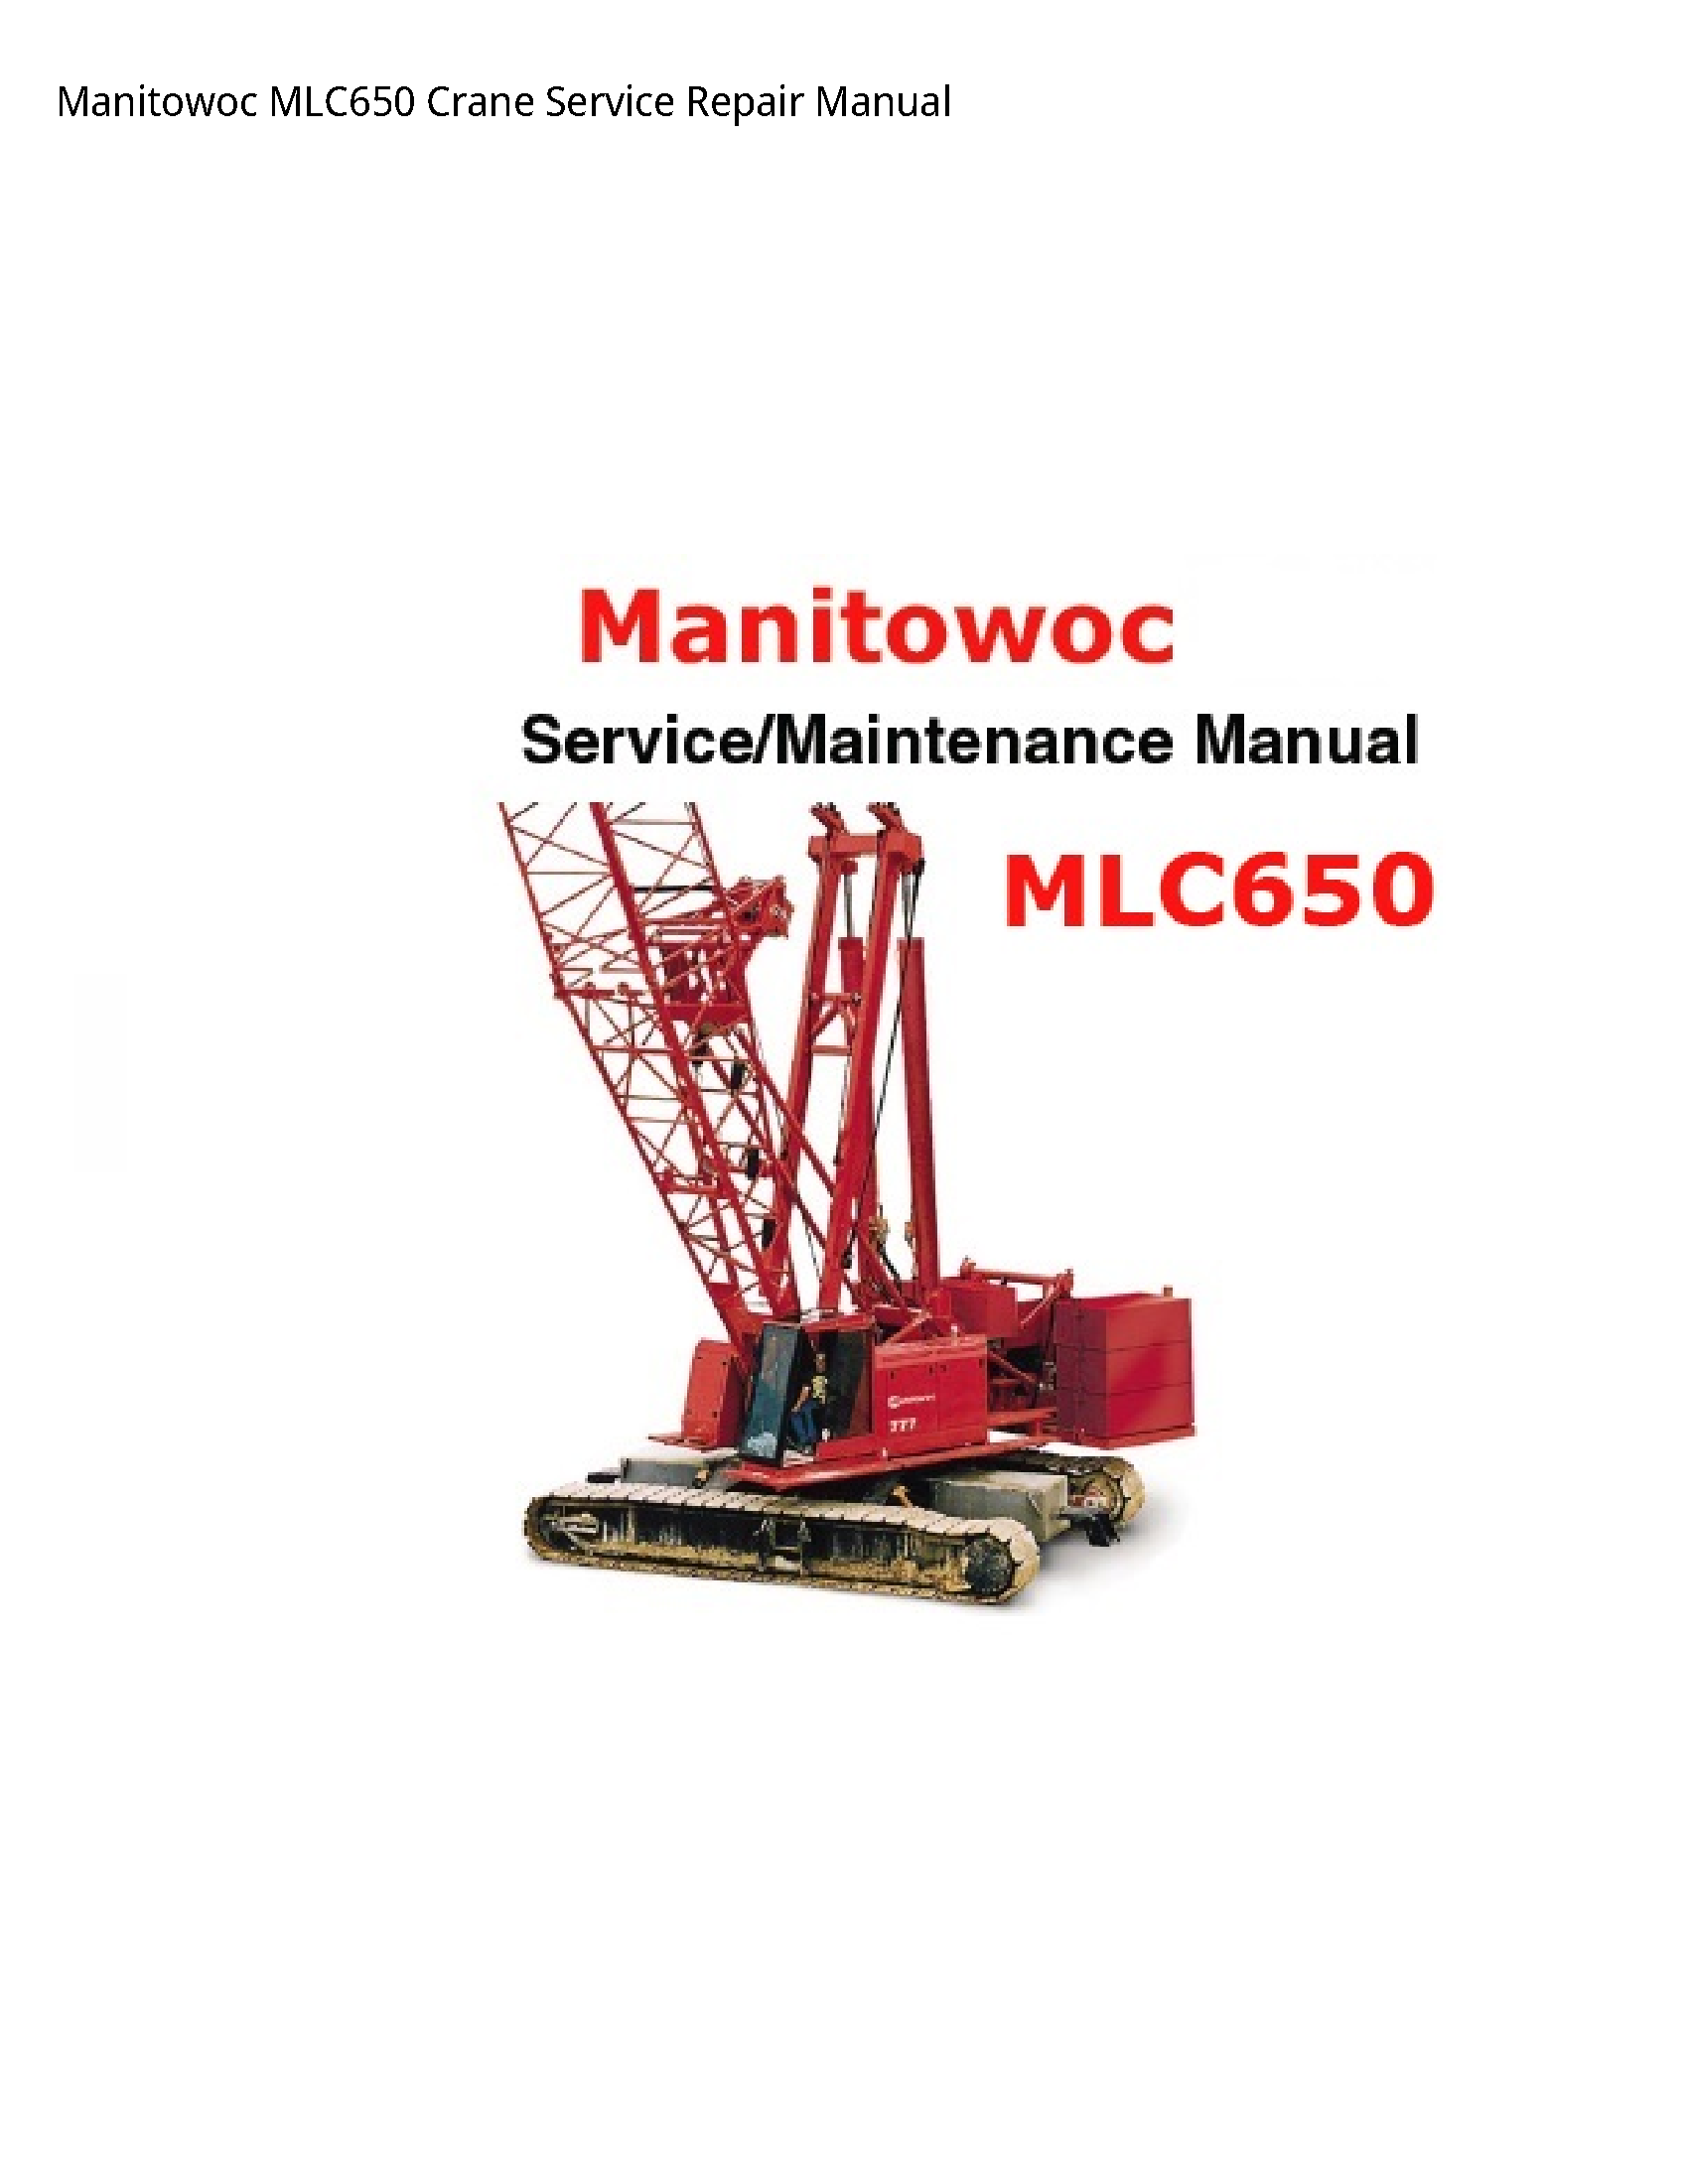 Manitowoc MLC650 Crane manual